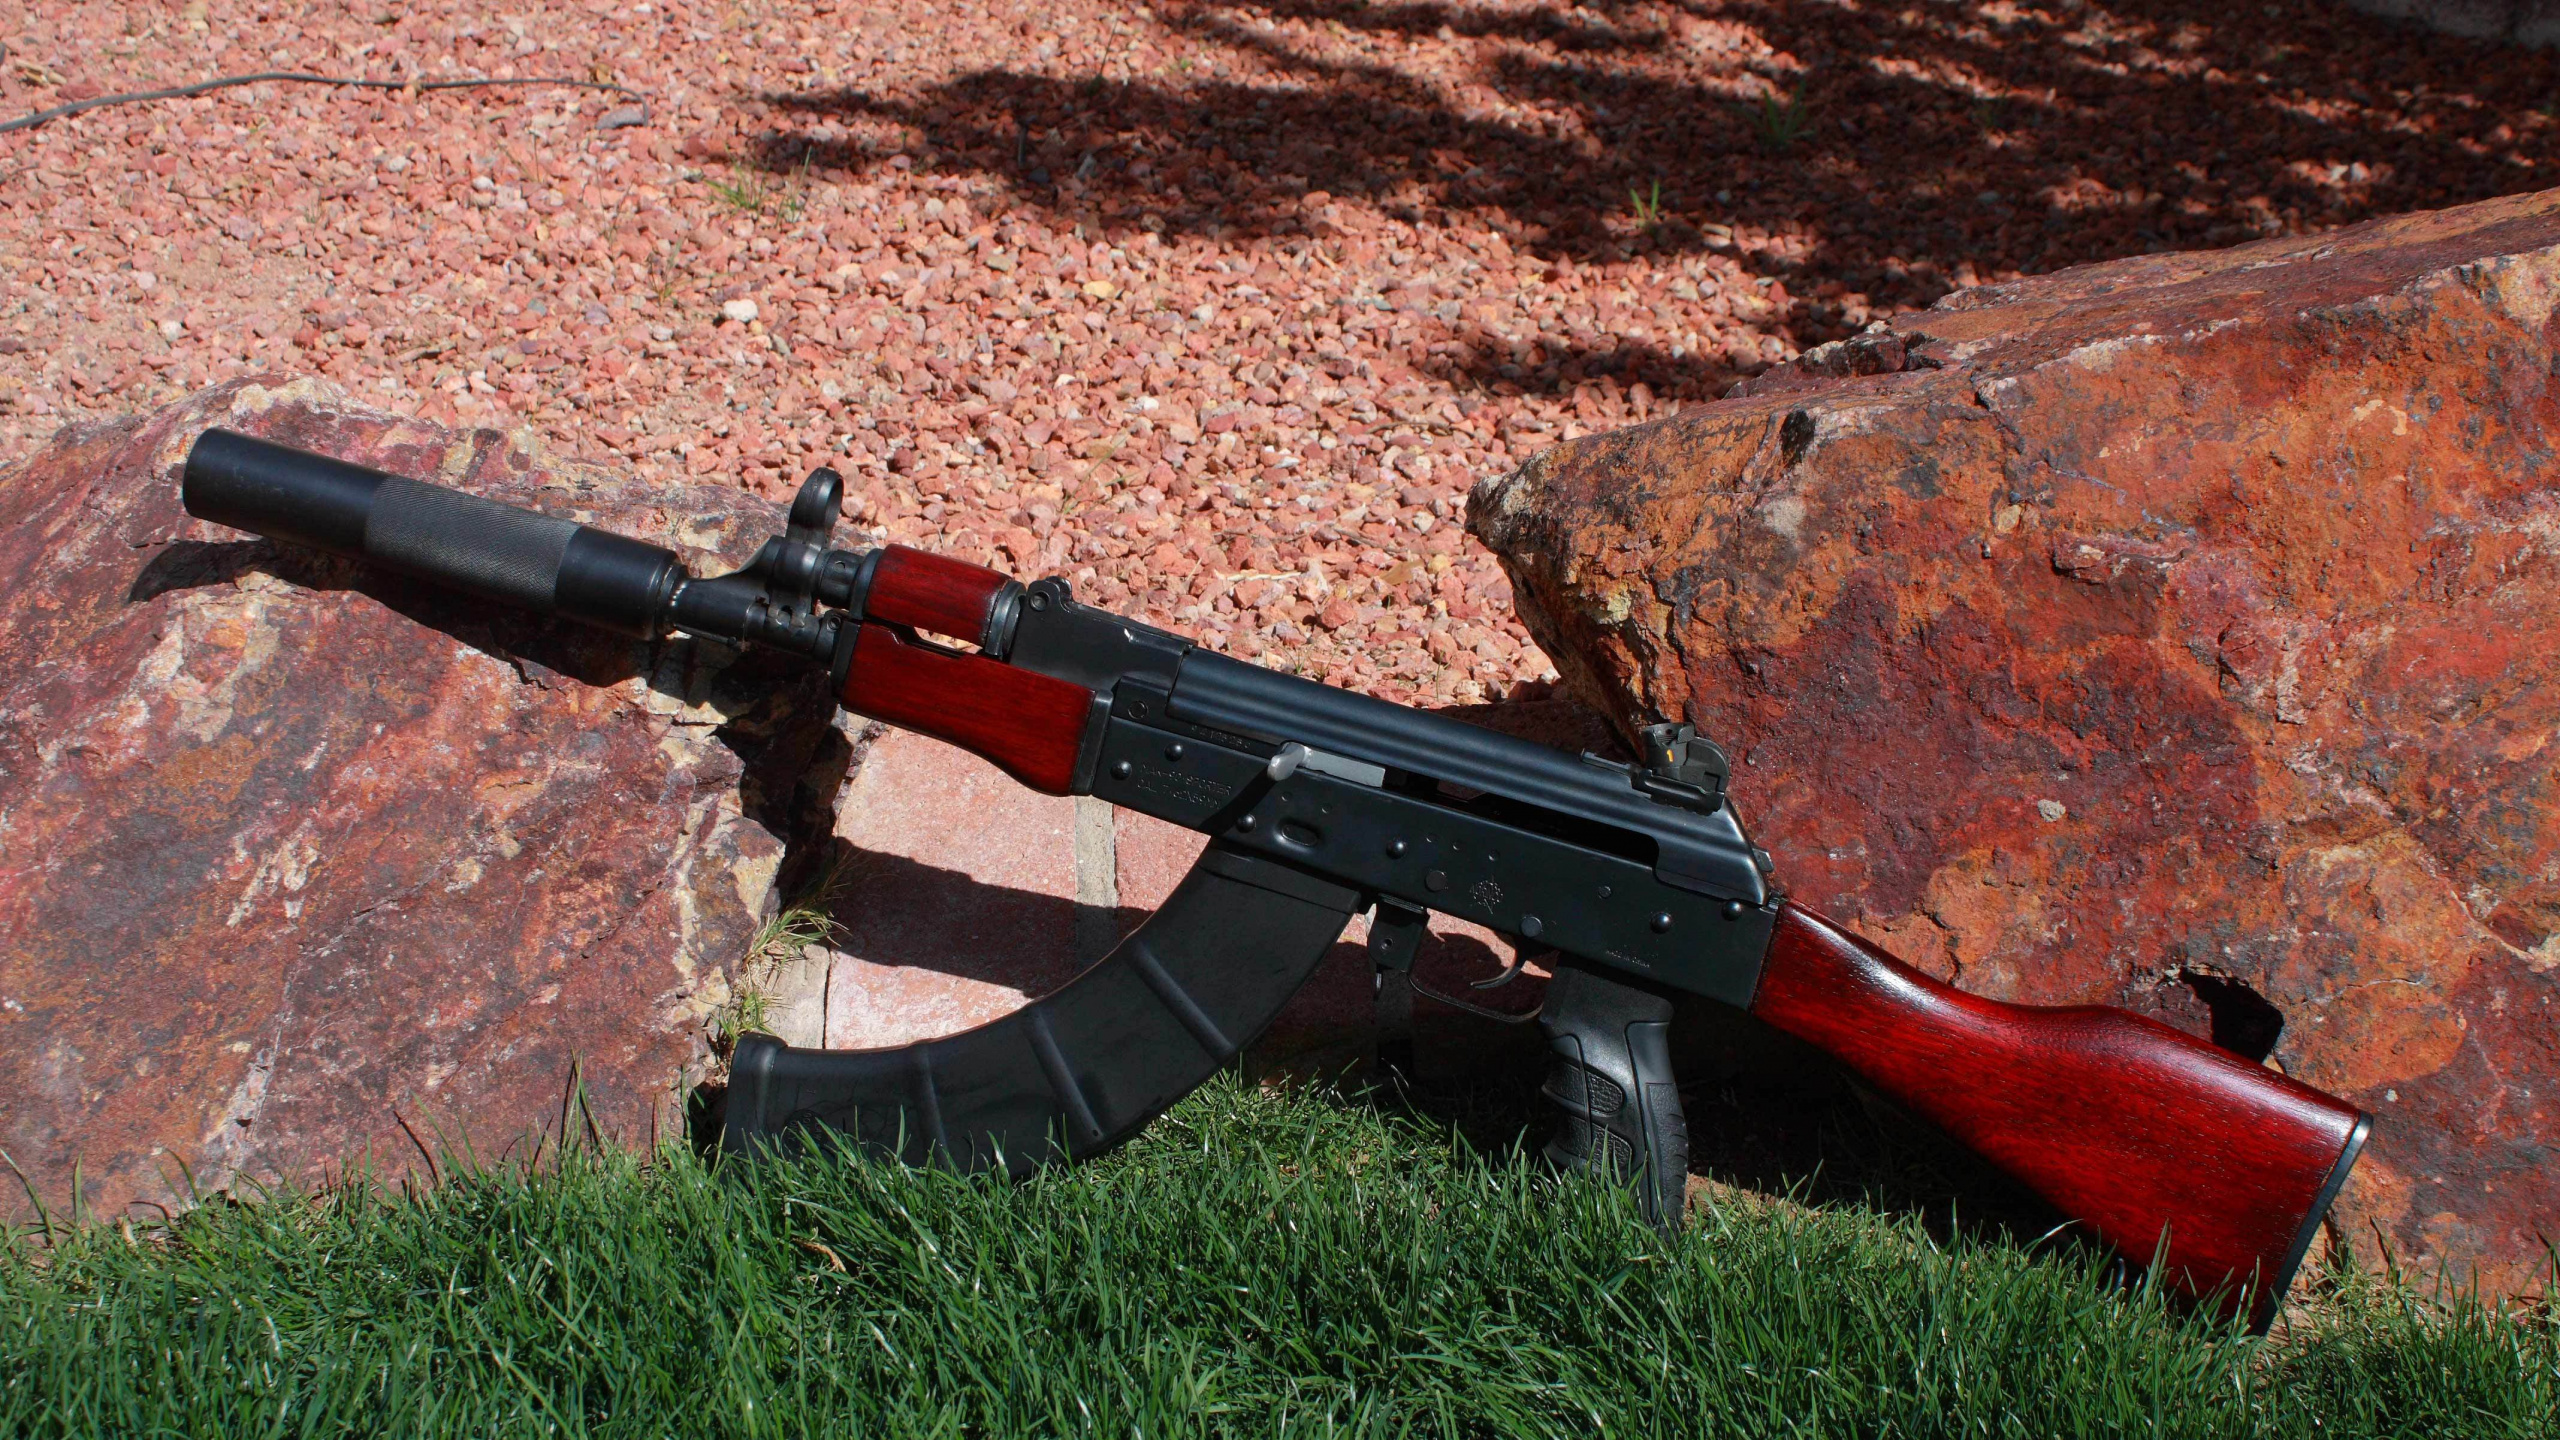 Ak-74, Gun, Firearm, Rifle, Air Gun. Wallpaper in 2560x1440 Resolution